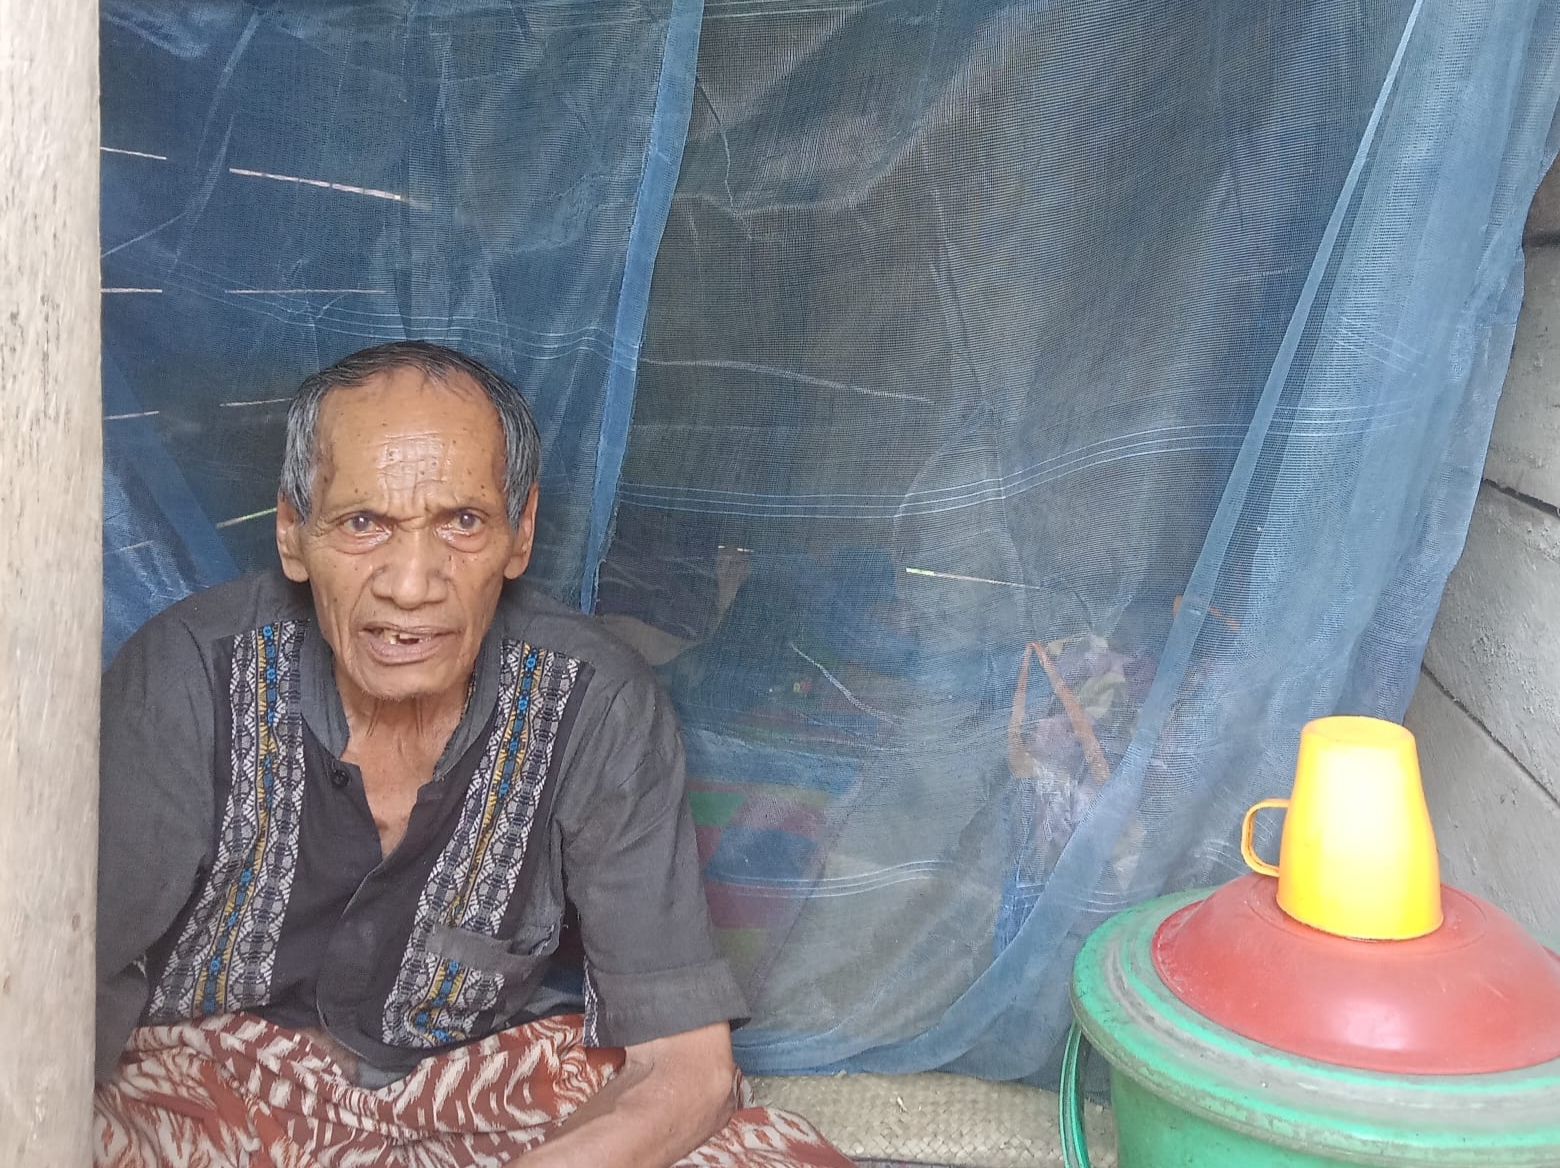 Kakek Deling Rangkuti Warga Miskin yang tinggal sendirian di gubuk kecil di Desa Jambur Padang Matinggi, Kecamatan Panyabungan Utara, Kab Madina. fhoto : Istimewa.